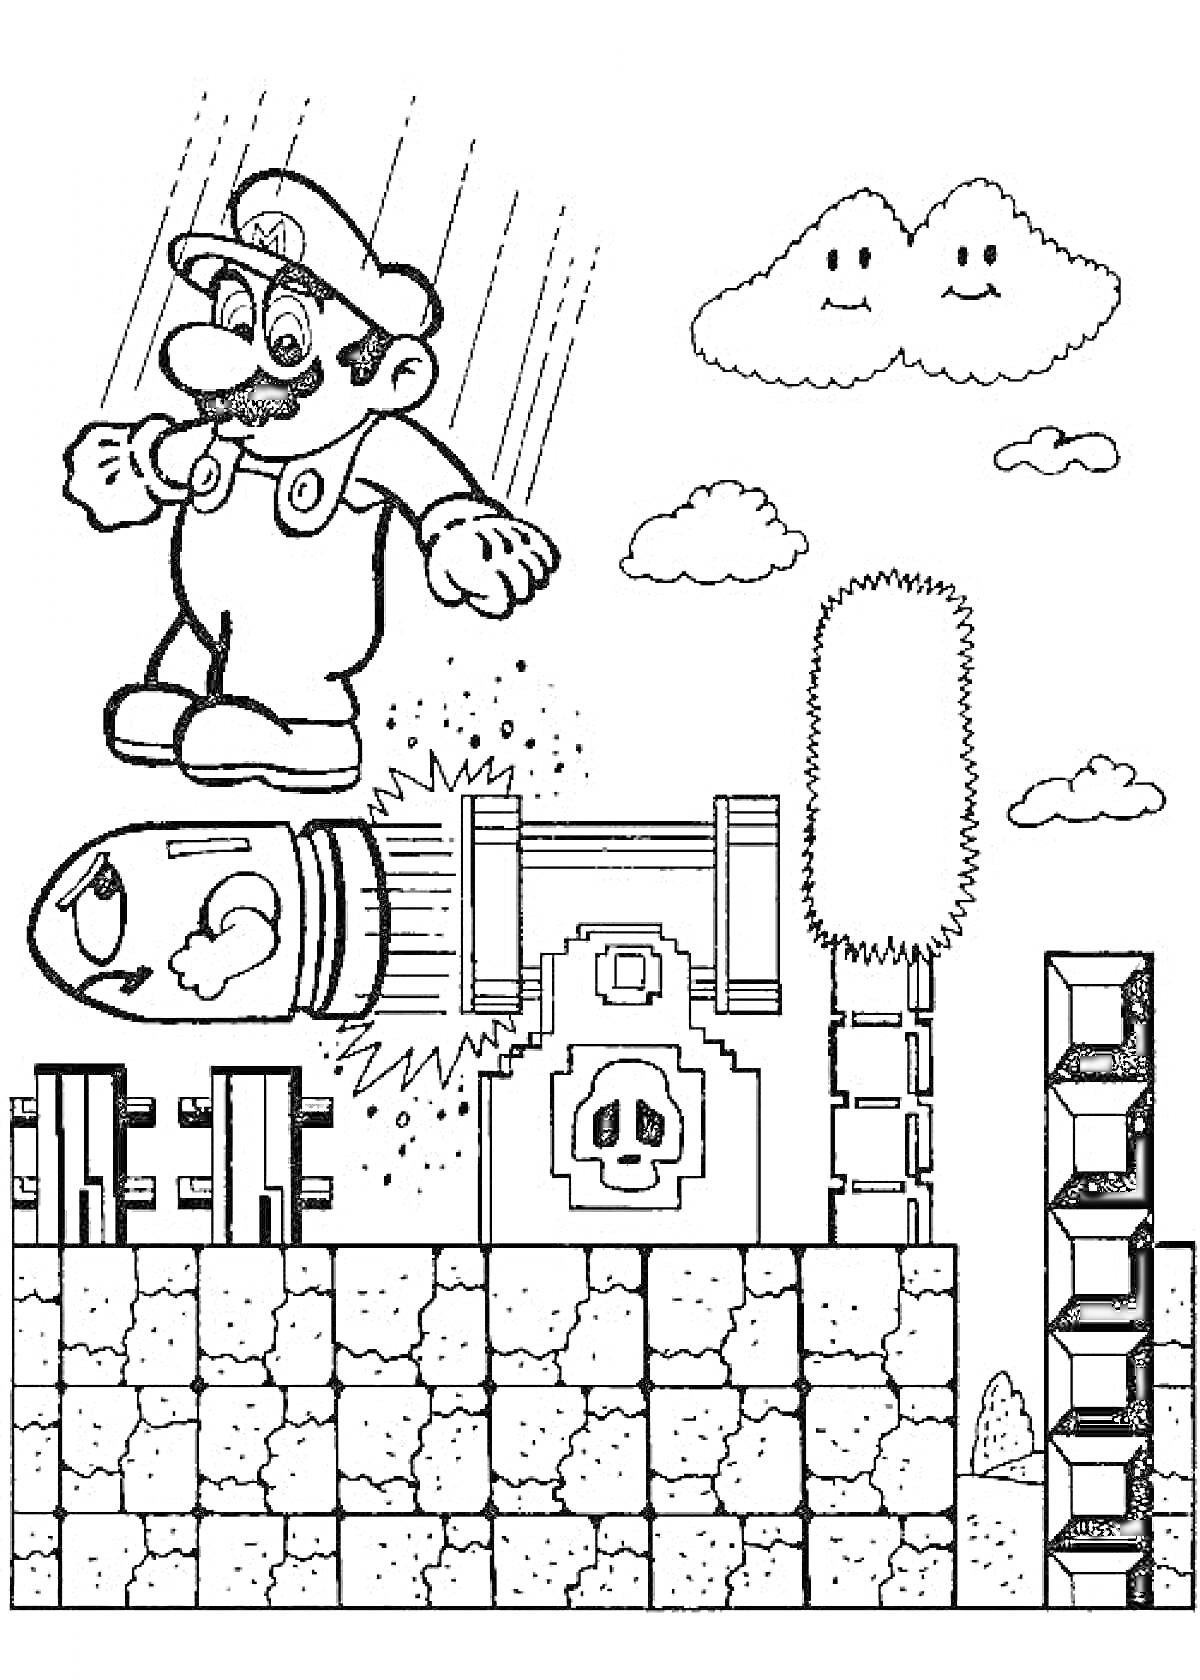 Марио на летящей пуле с облаками, кустом, пушкой и кирпичами